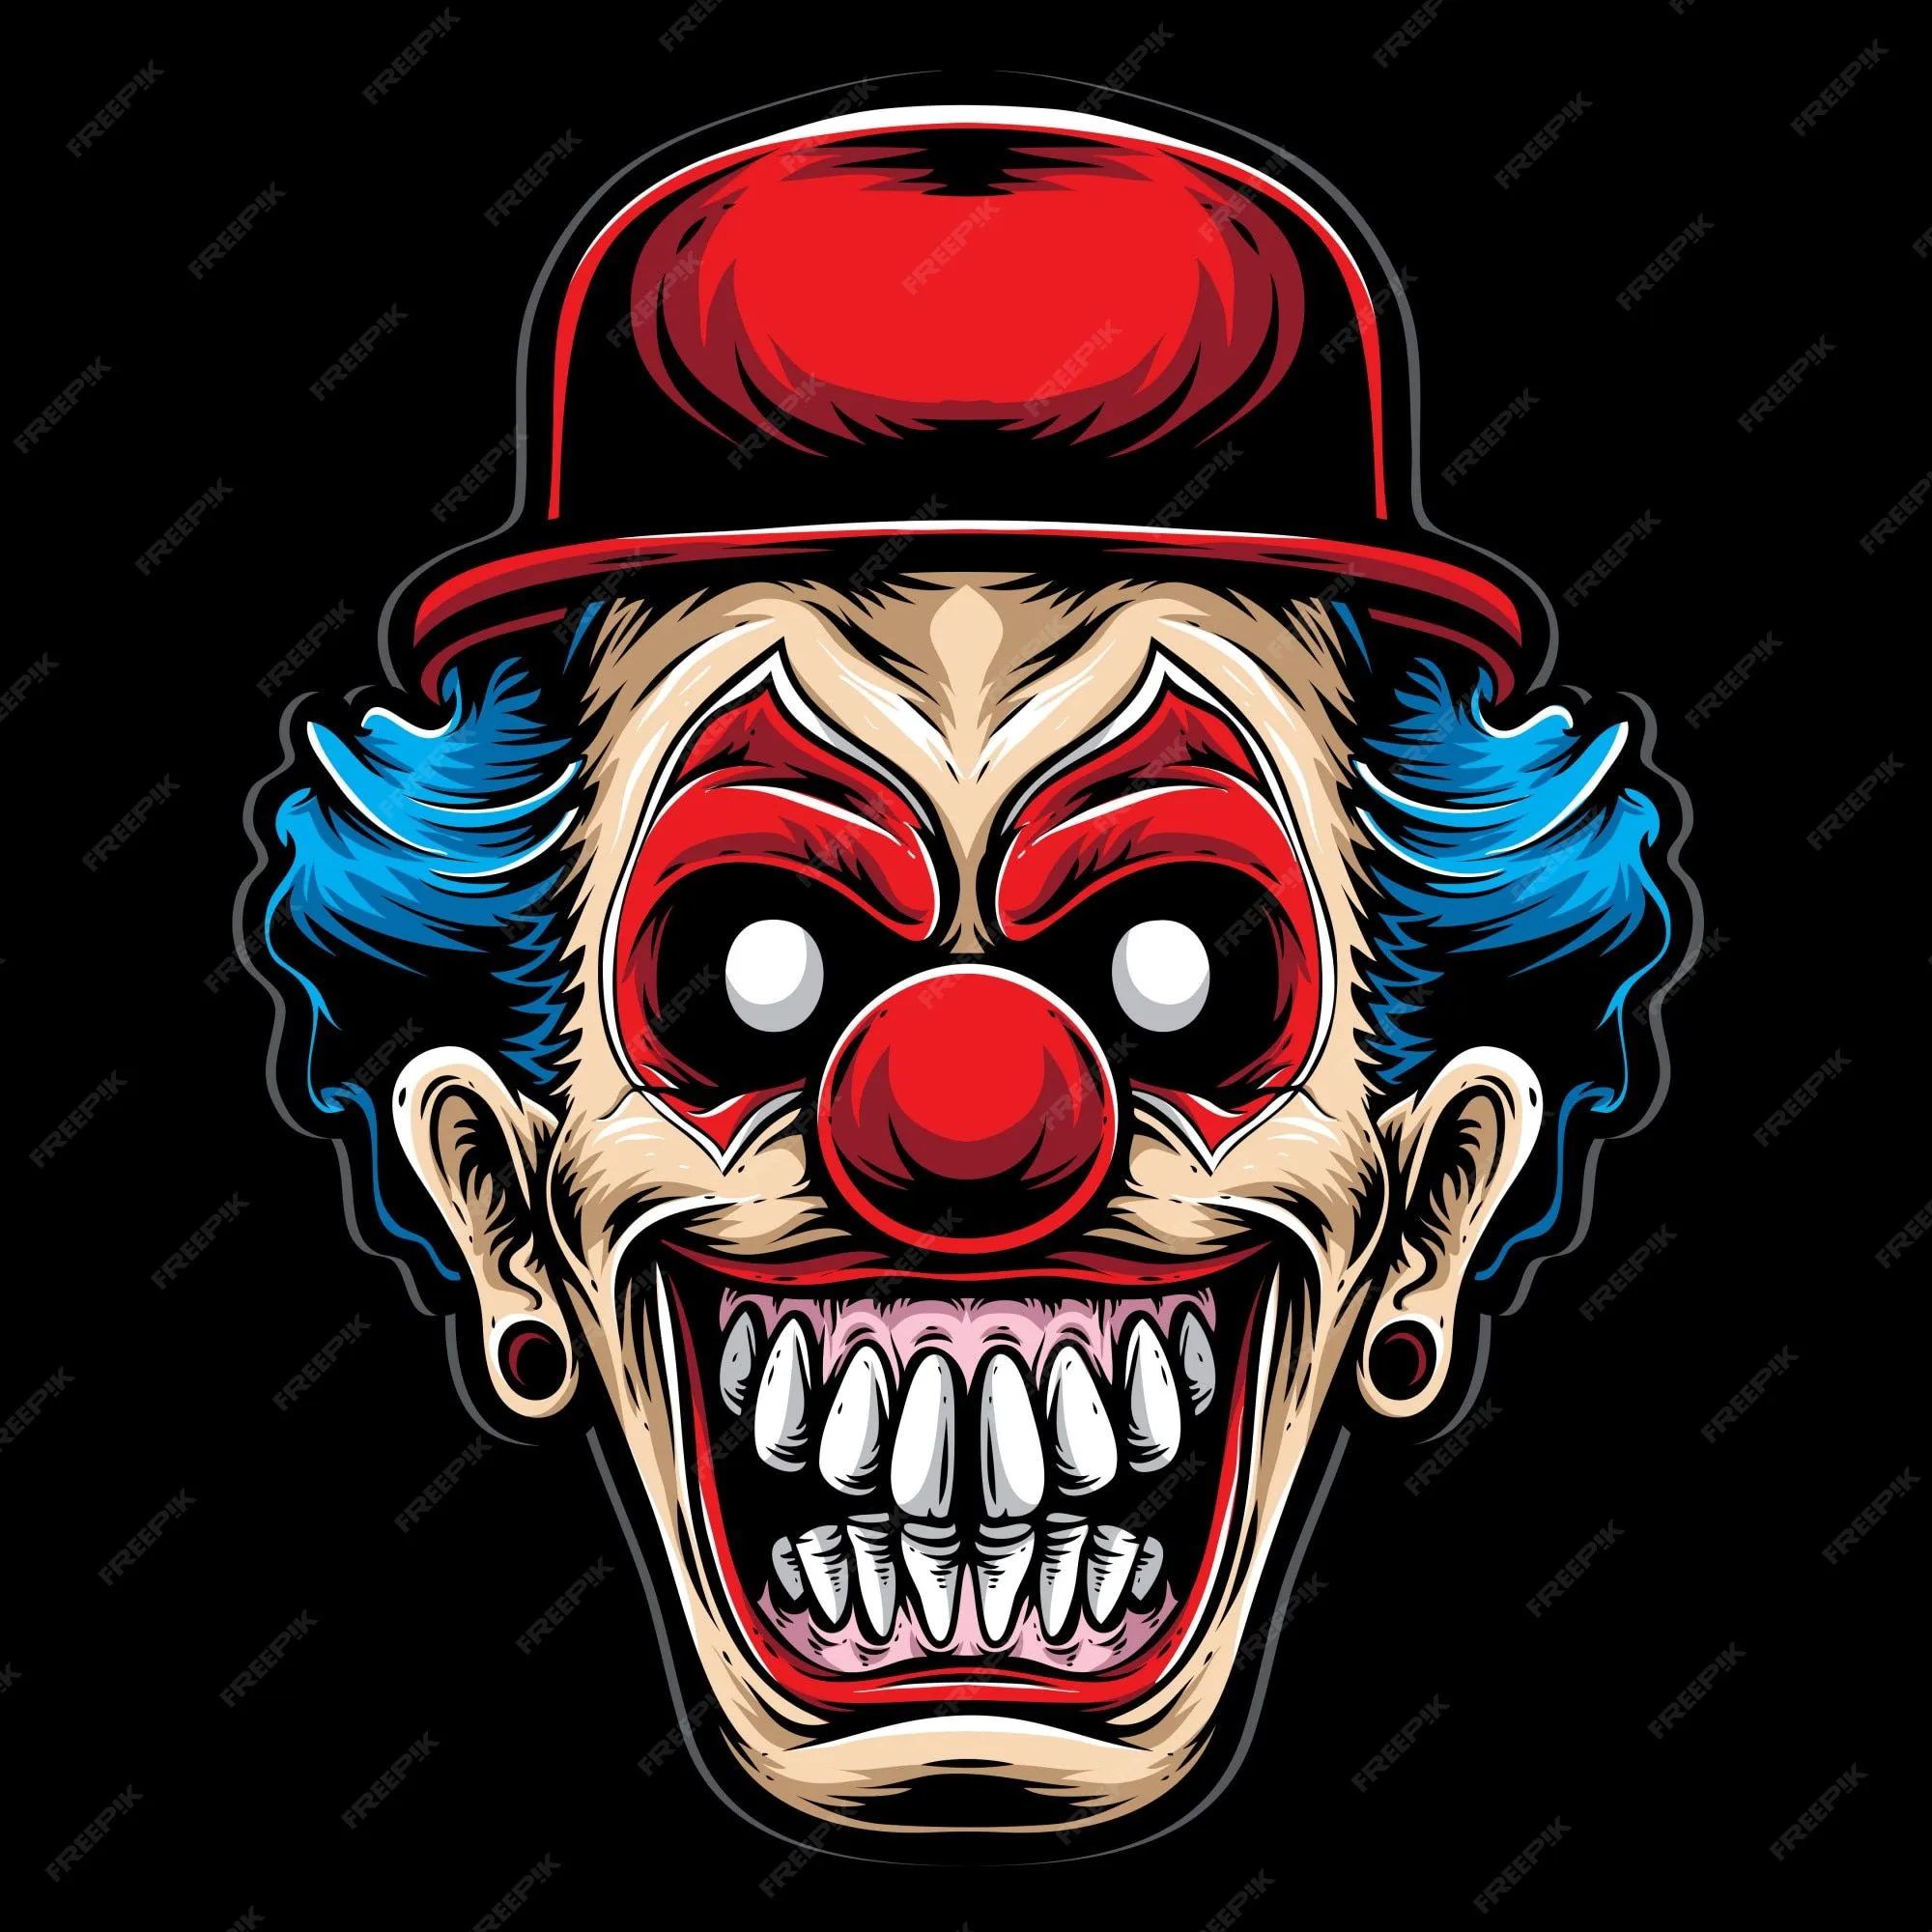 Imágenes de Horror Clown - Descarga gratuita en Freepik